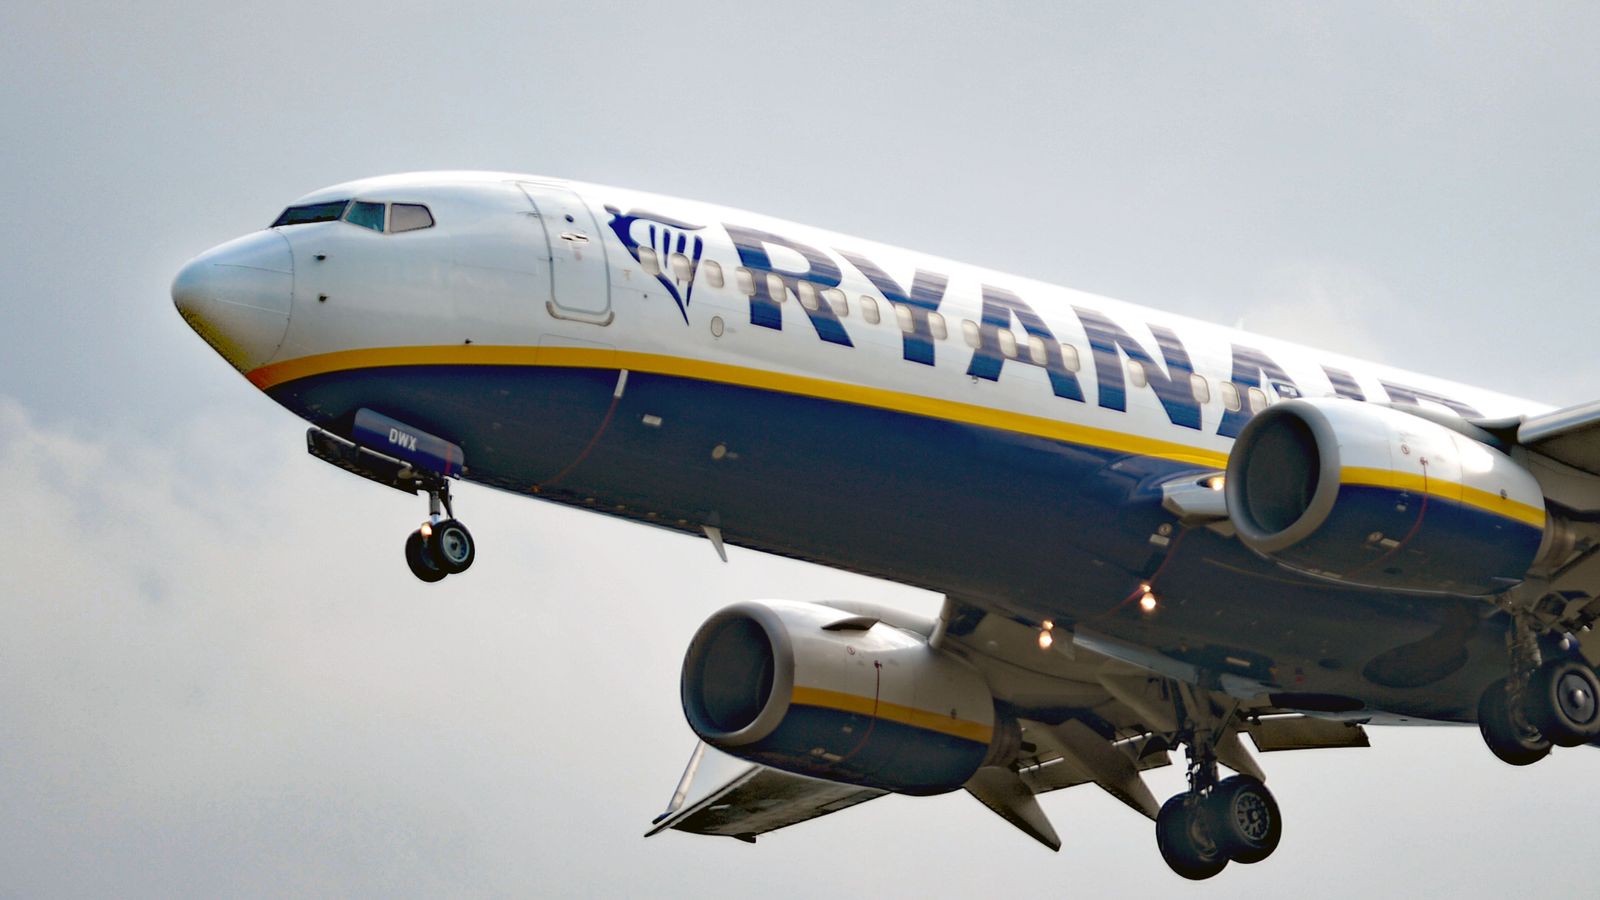 Ryanair критикува онлайн „пиратите“, след като авиокомпанията беше премахната от сайтовете за резервации, включително Booking.com и Kayak